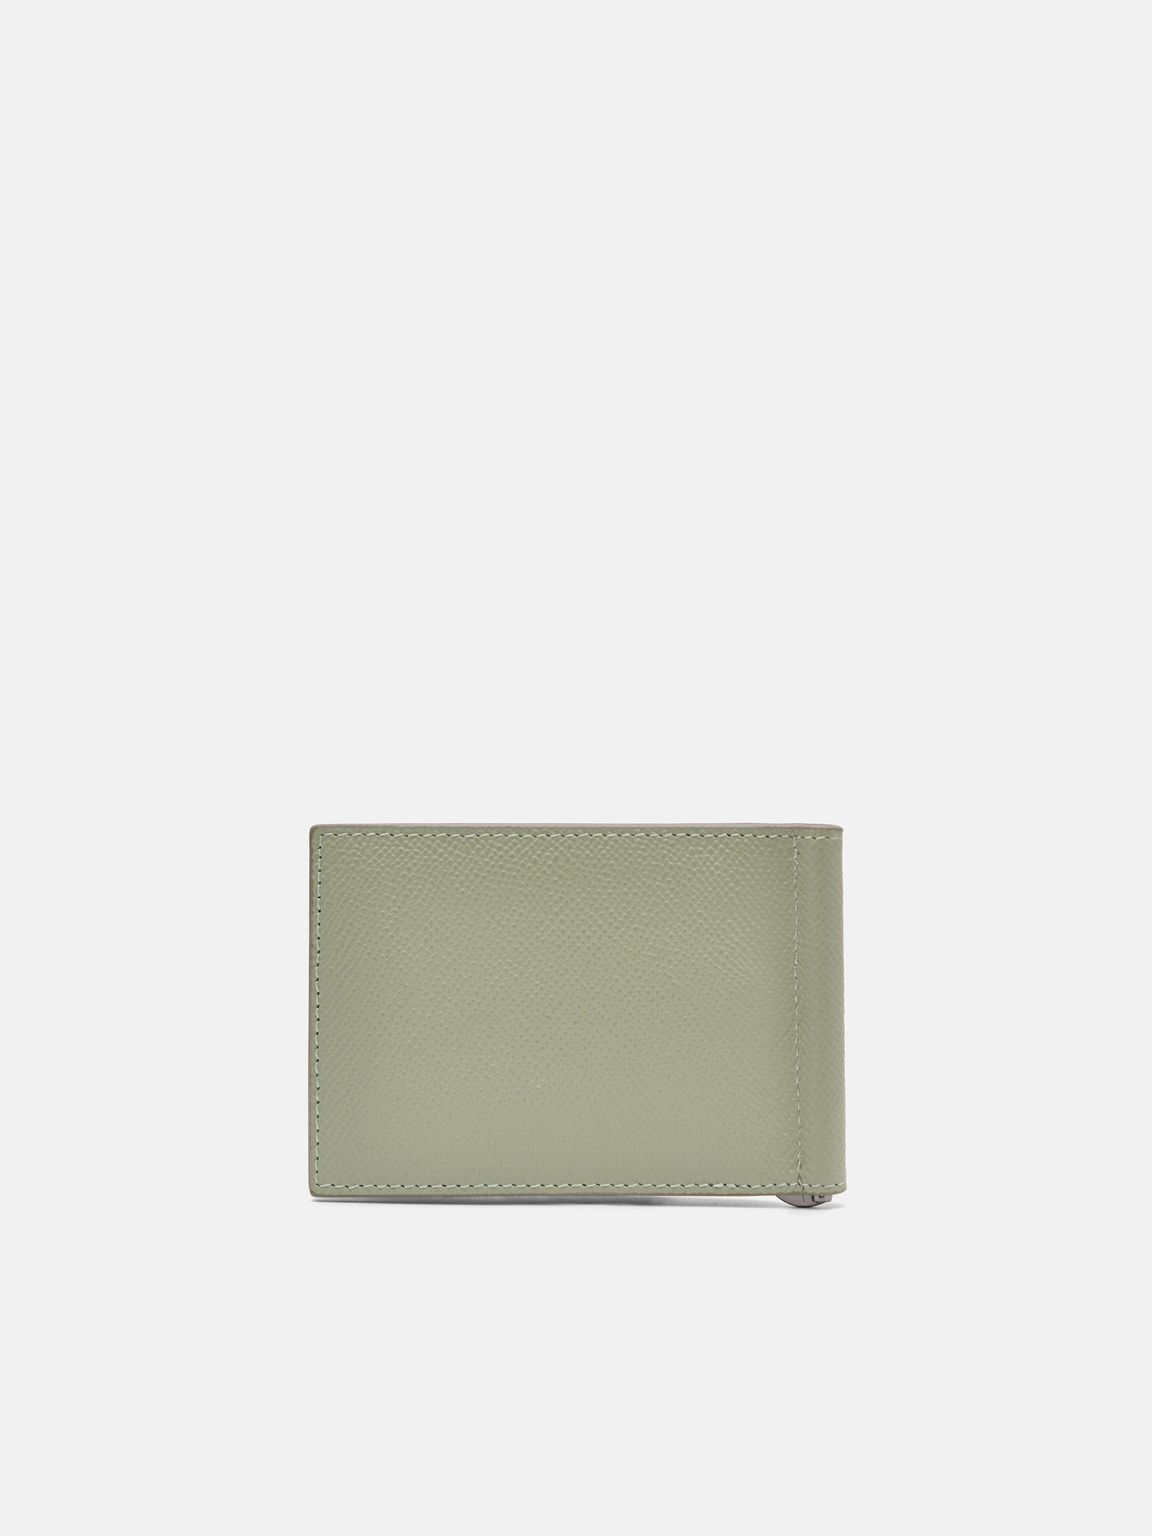 Oliver Leather Bi-Fold Card Holder with Money Clip, Olive